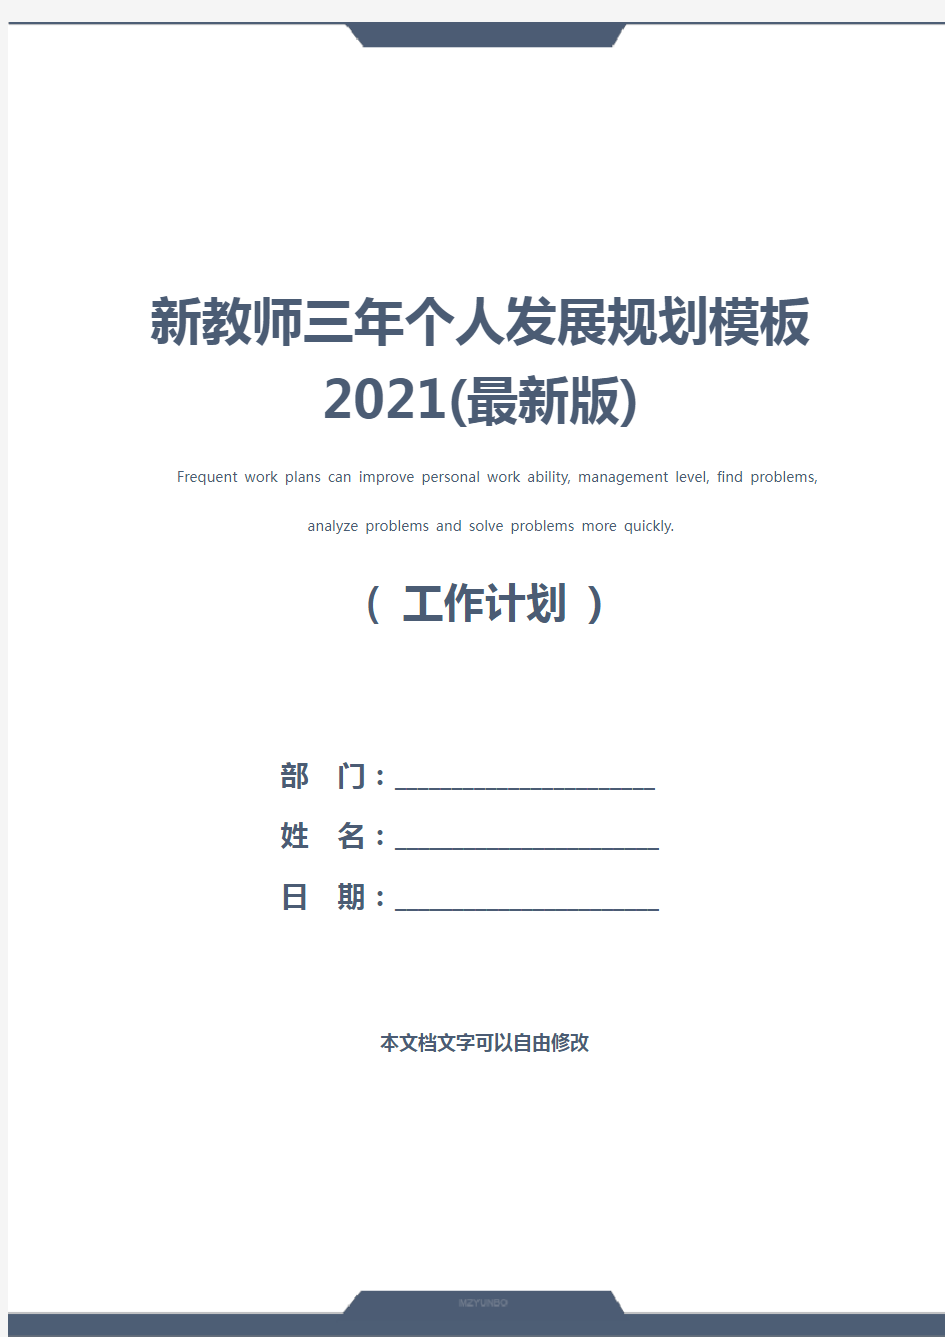 新教师三年个人发展规划模板2021(最新版)